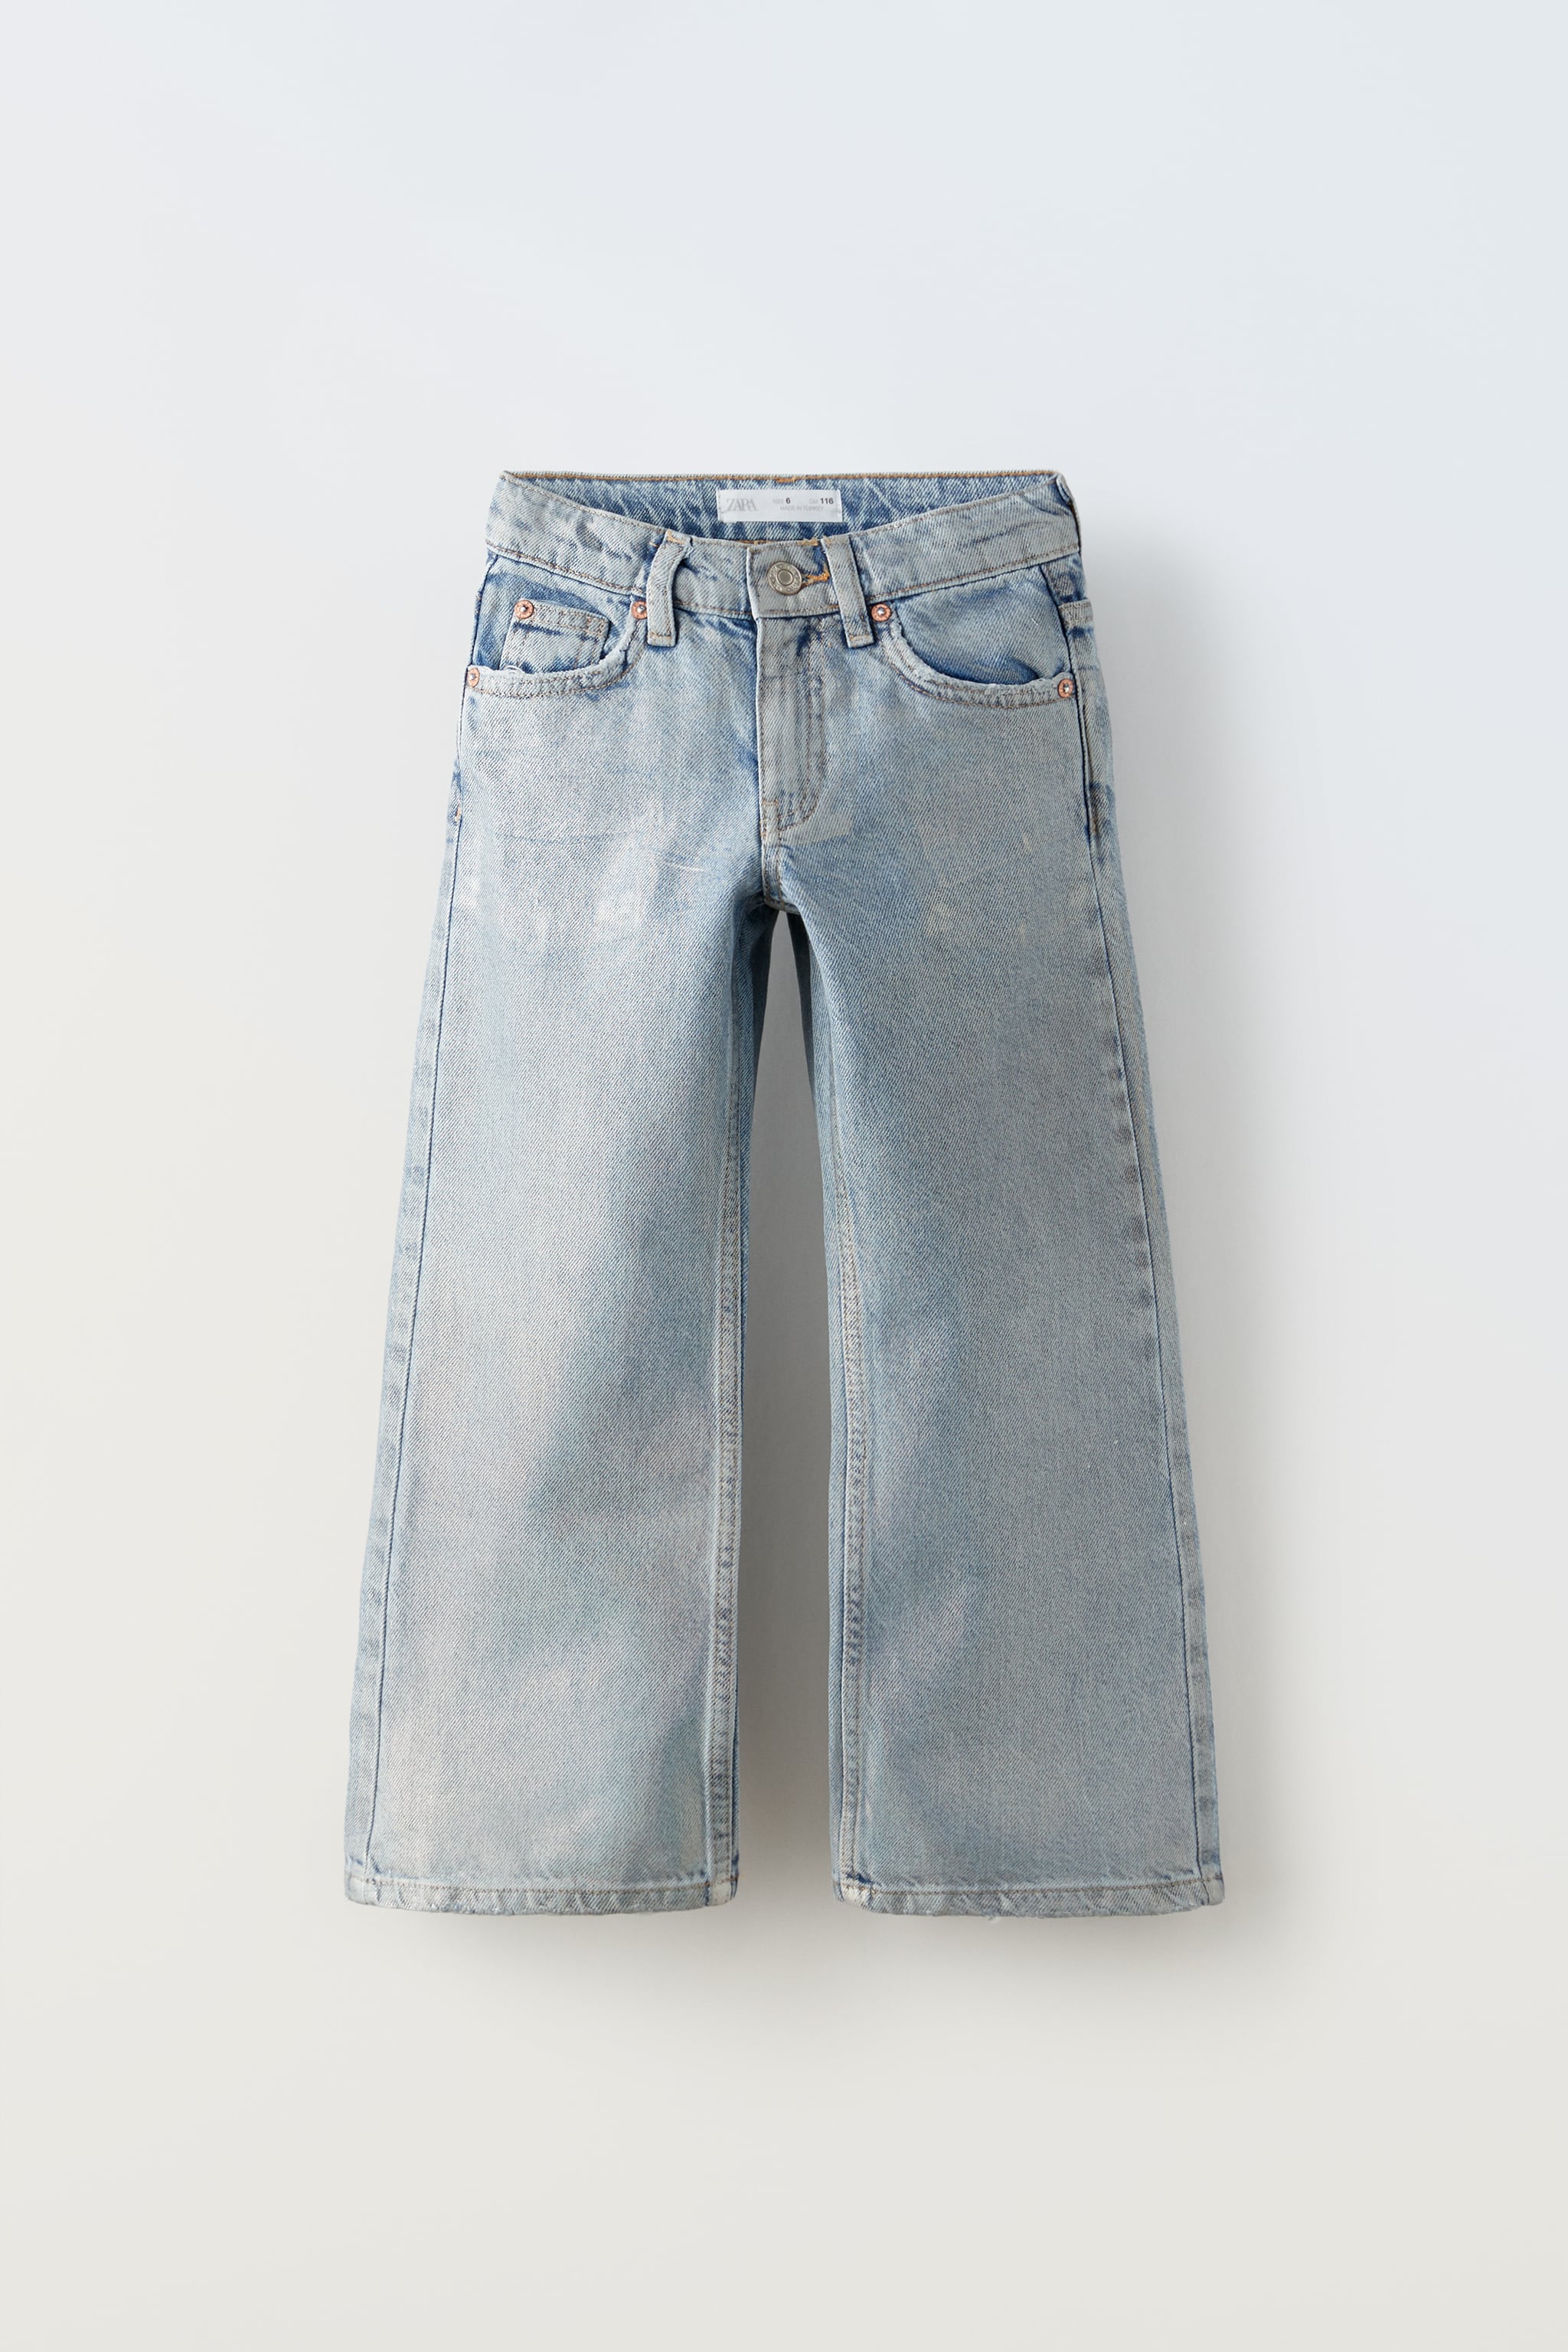 شلوار جینز دخترانه 20166 سایز 6 تا 14 سال مارک ZARA